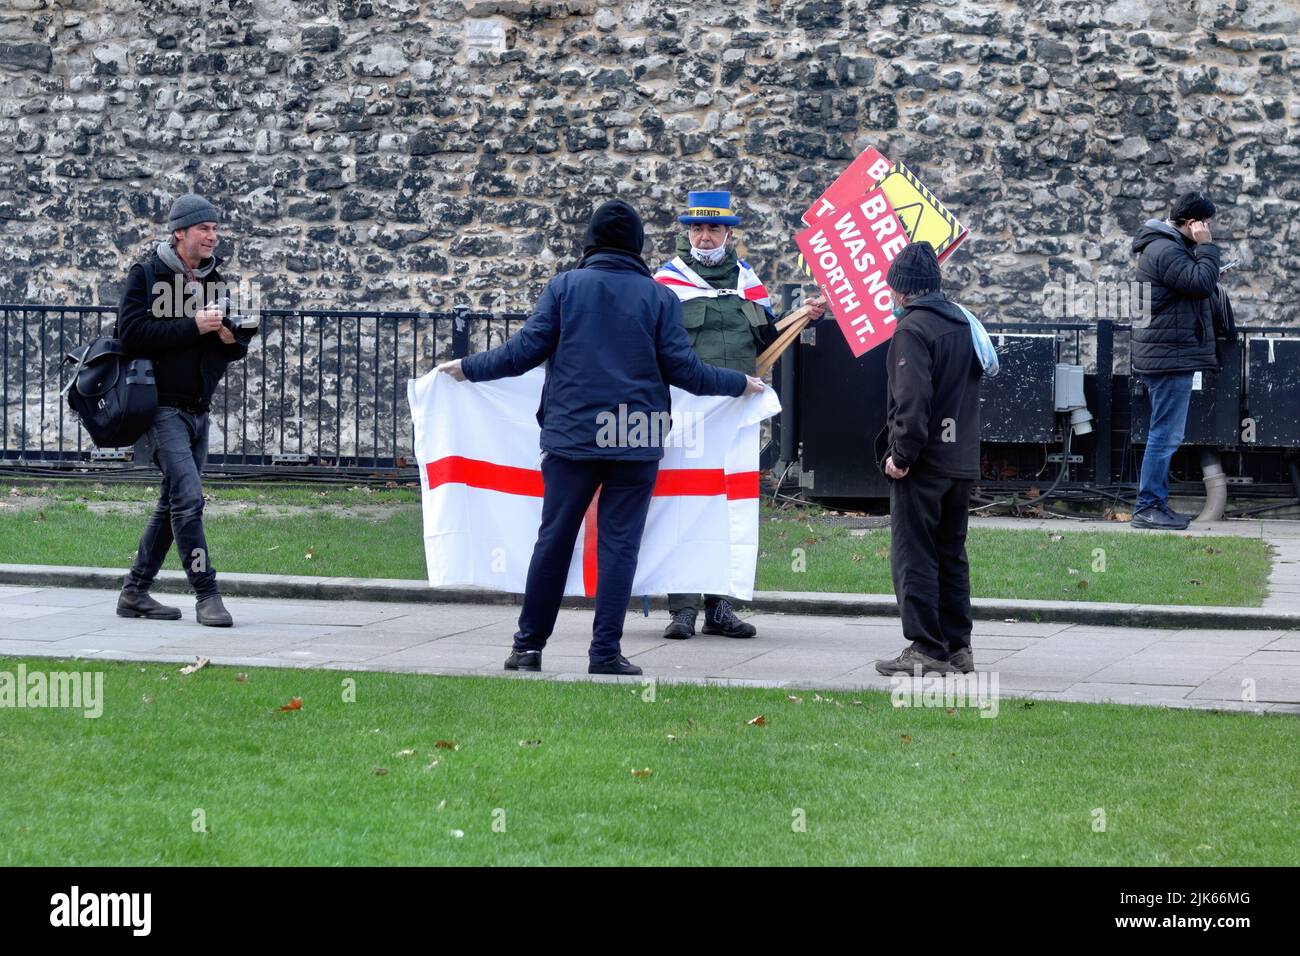 London, UK - December 30, 2020: Brexit protester in the Abingdon Street Gardens, London, UK Stock Photo